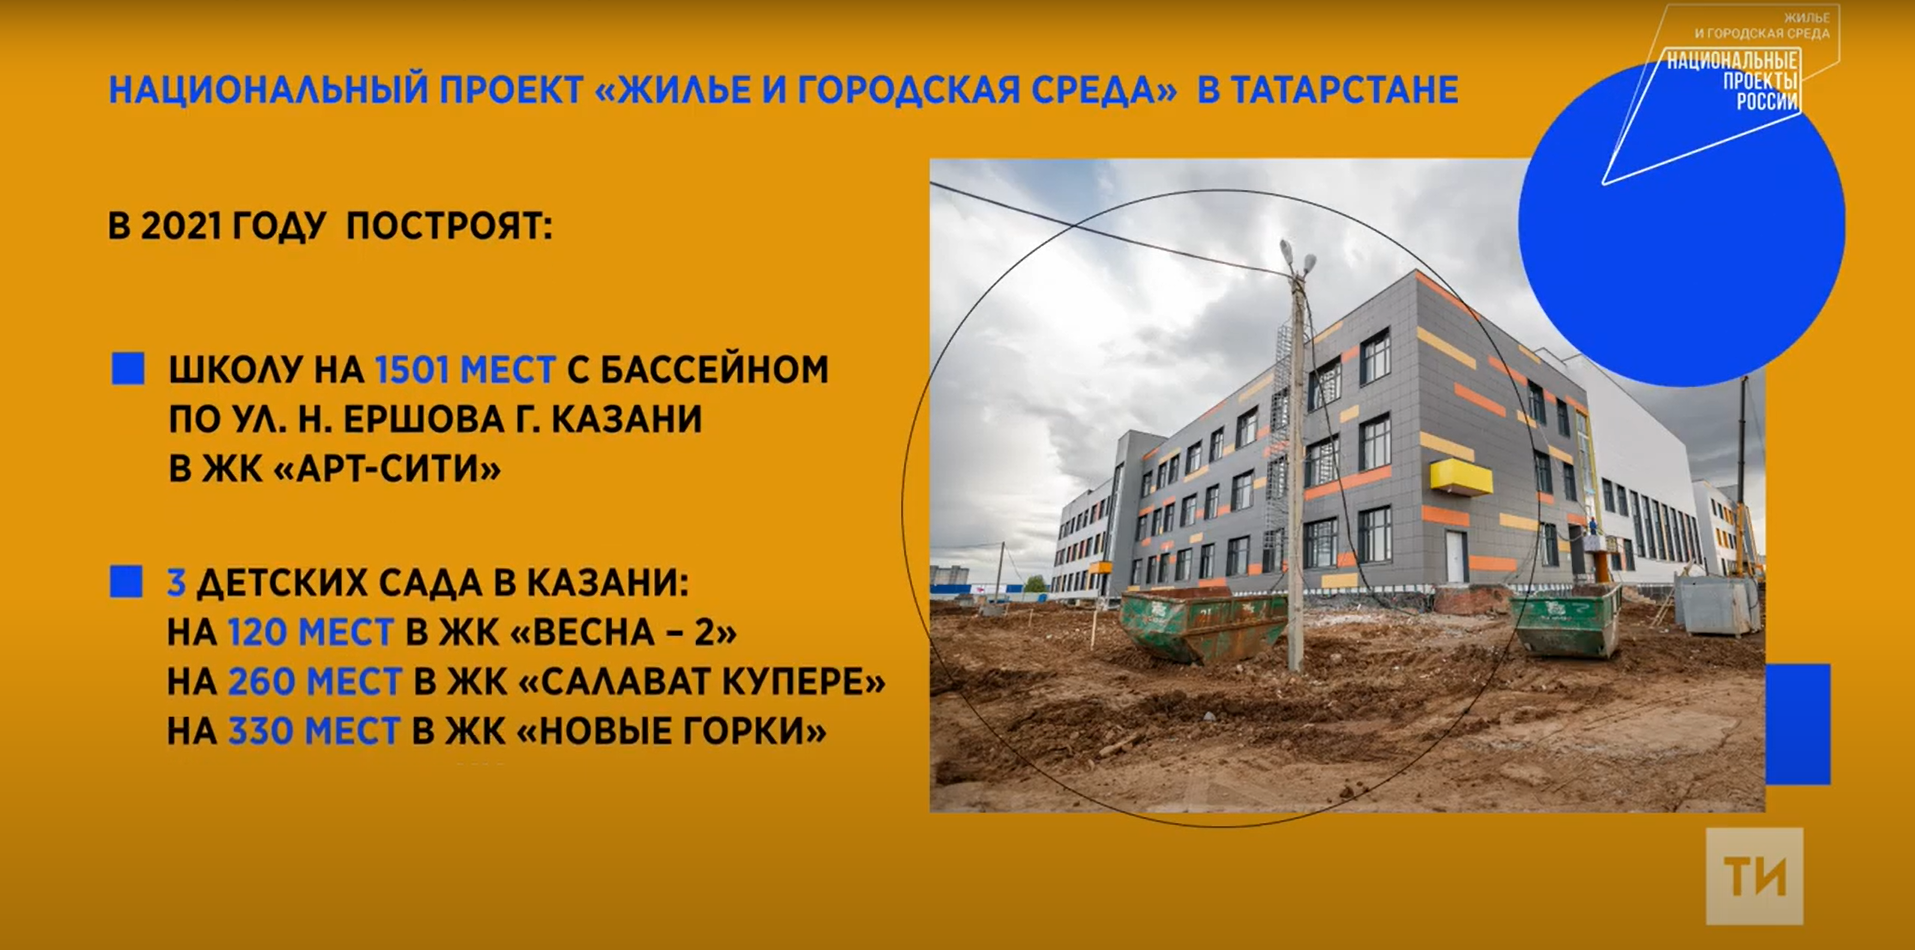 В Казани в рамках национального проекта появится школа и три детских сада